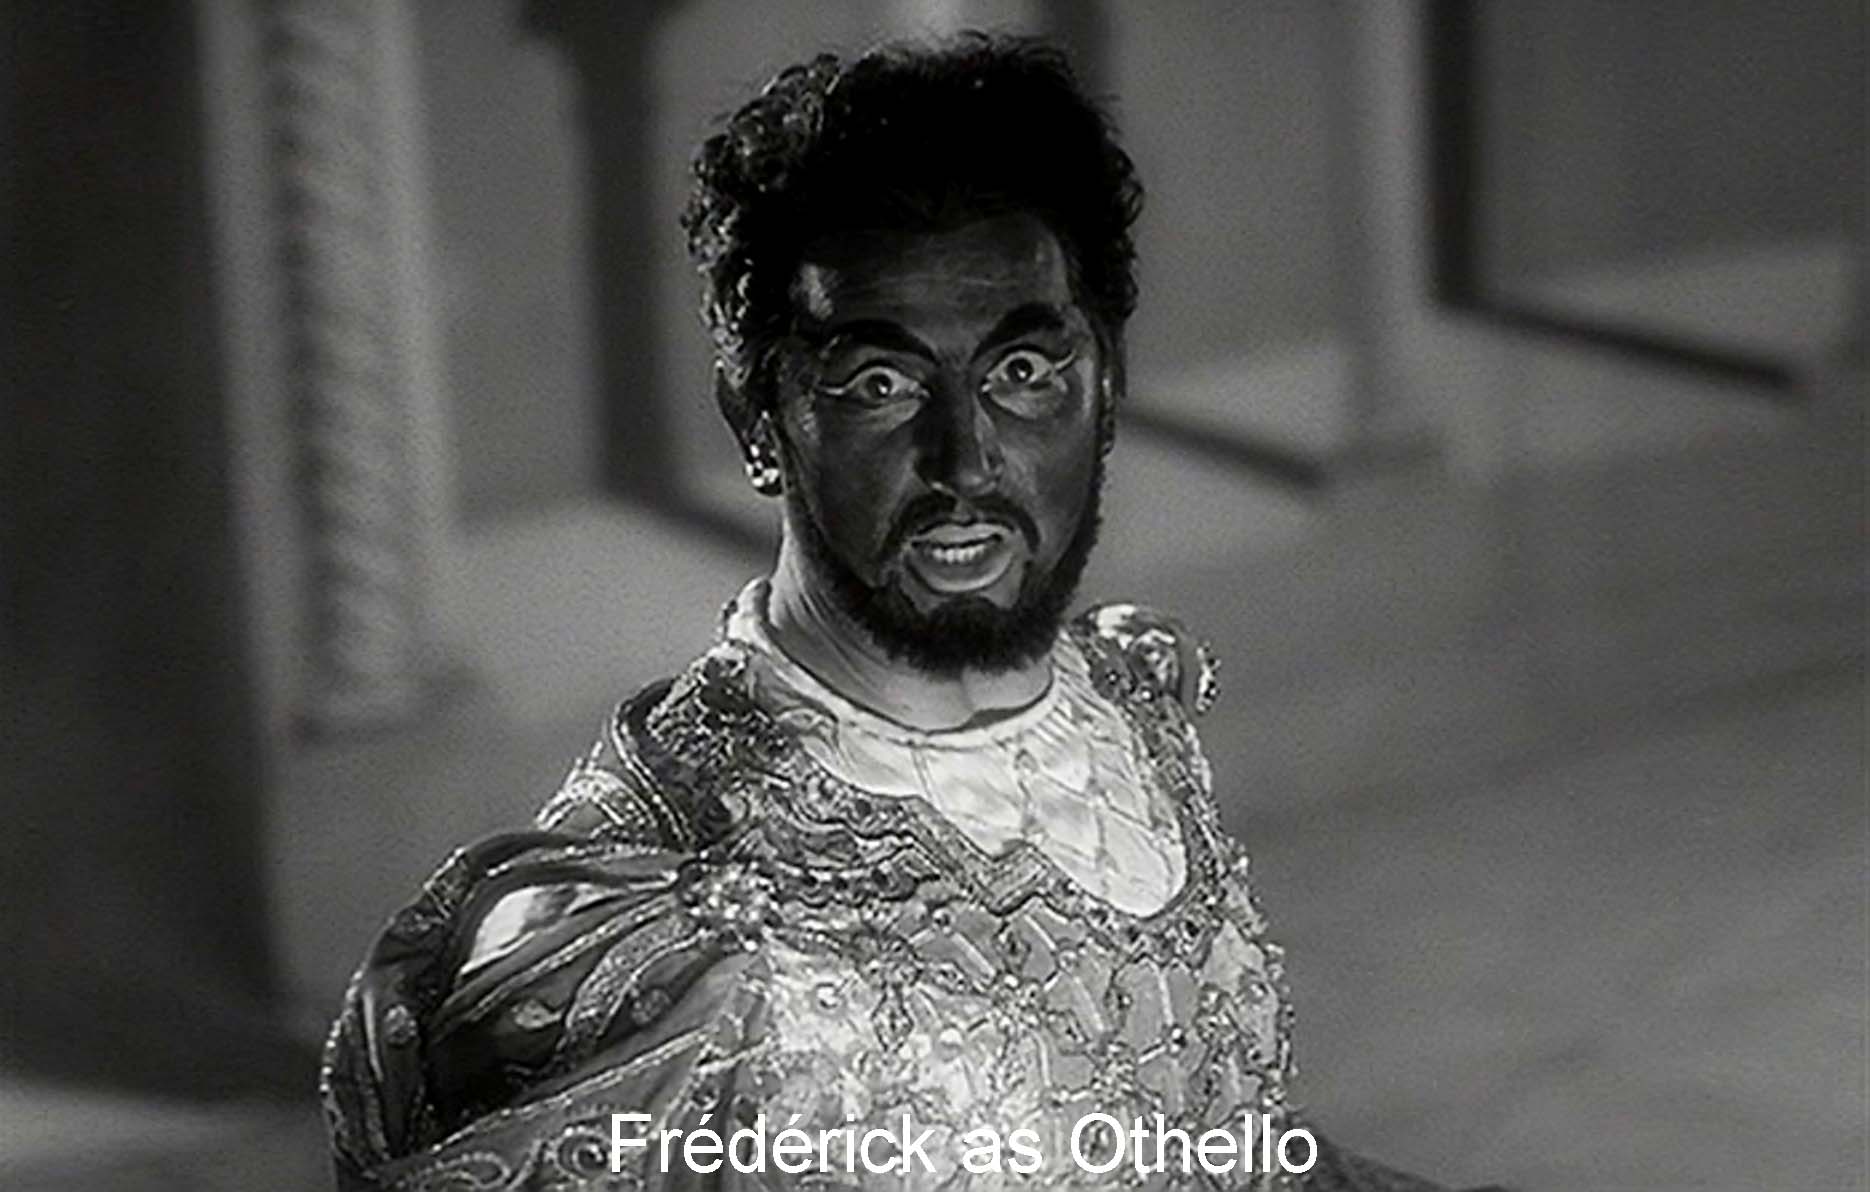 Frédérick as Othello